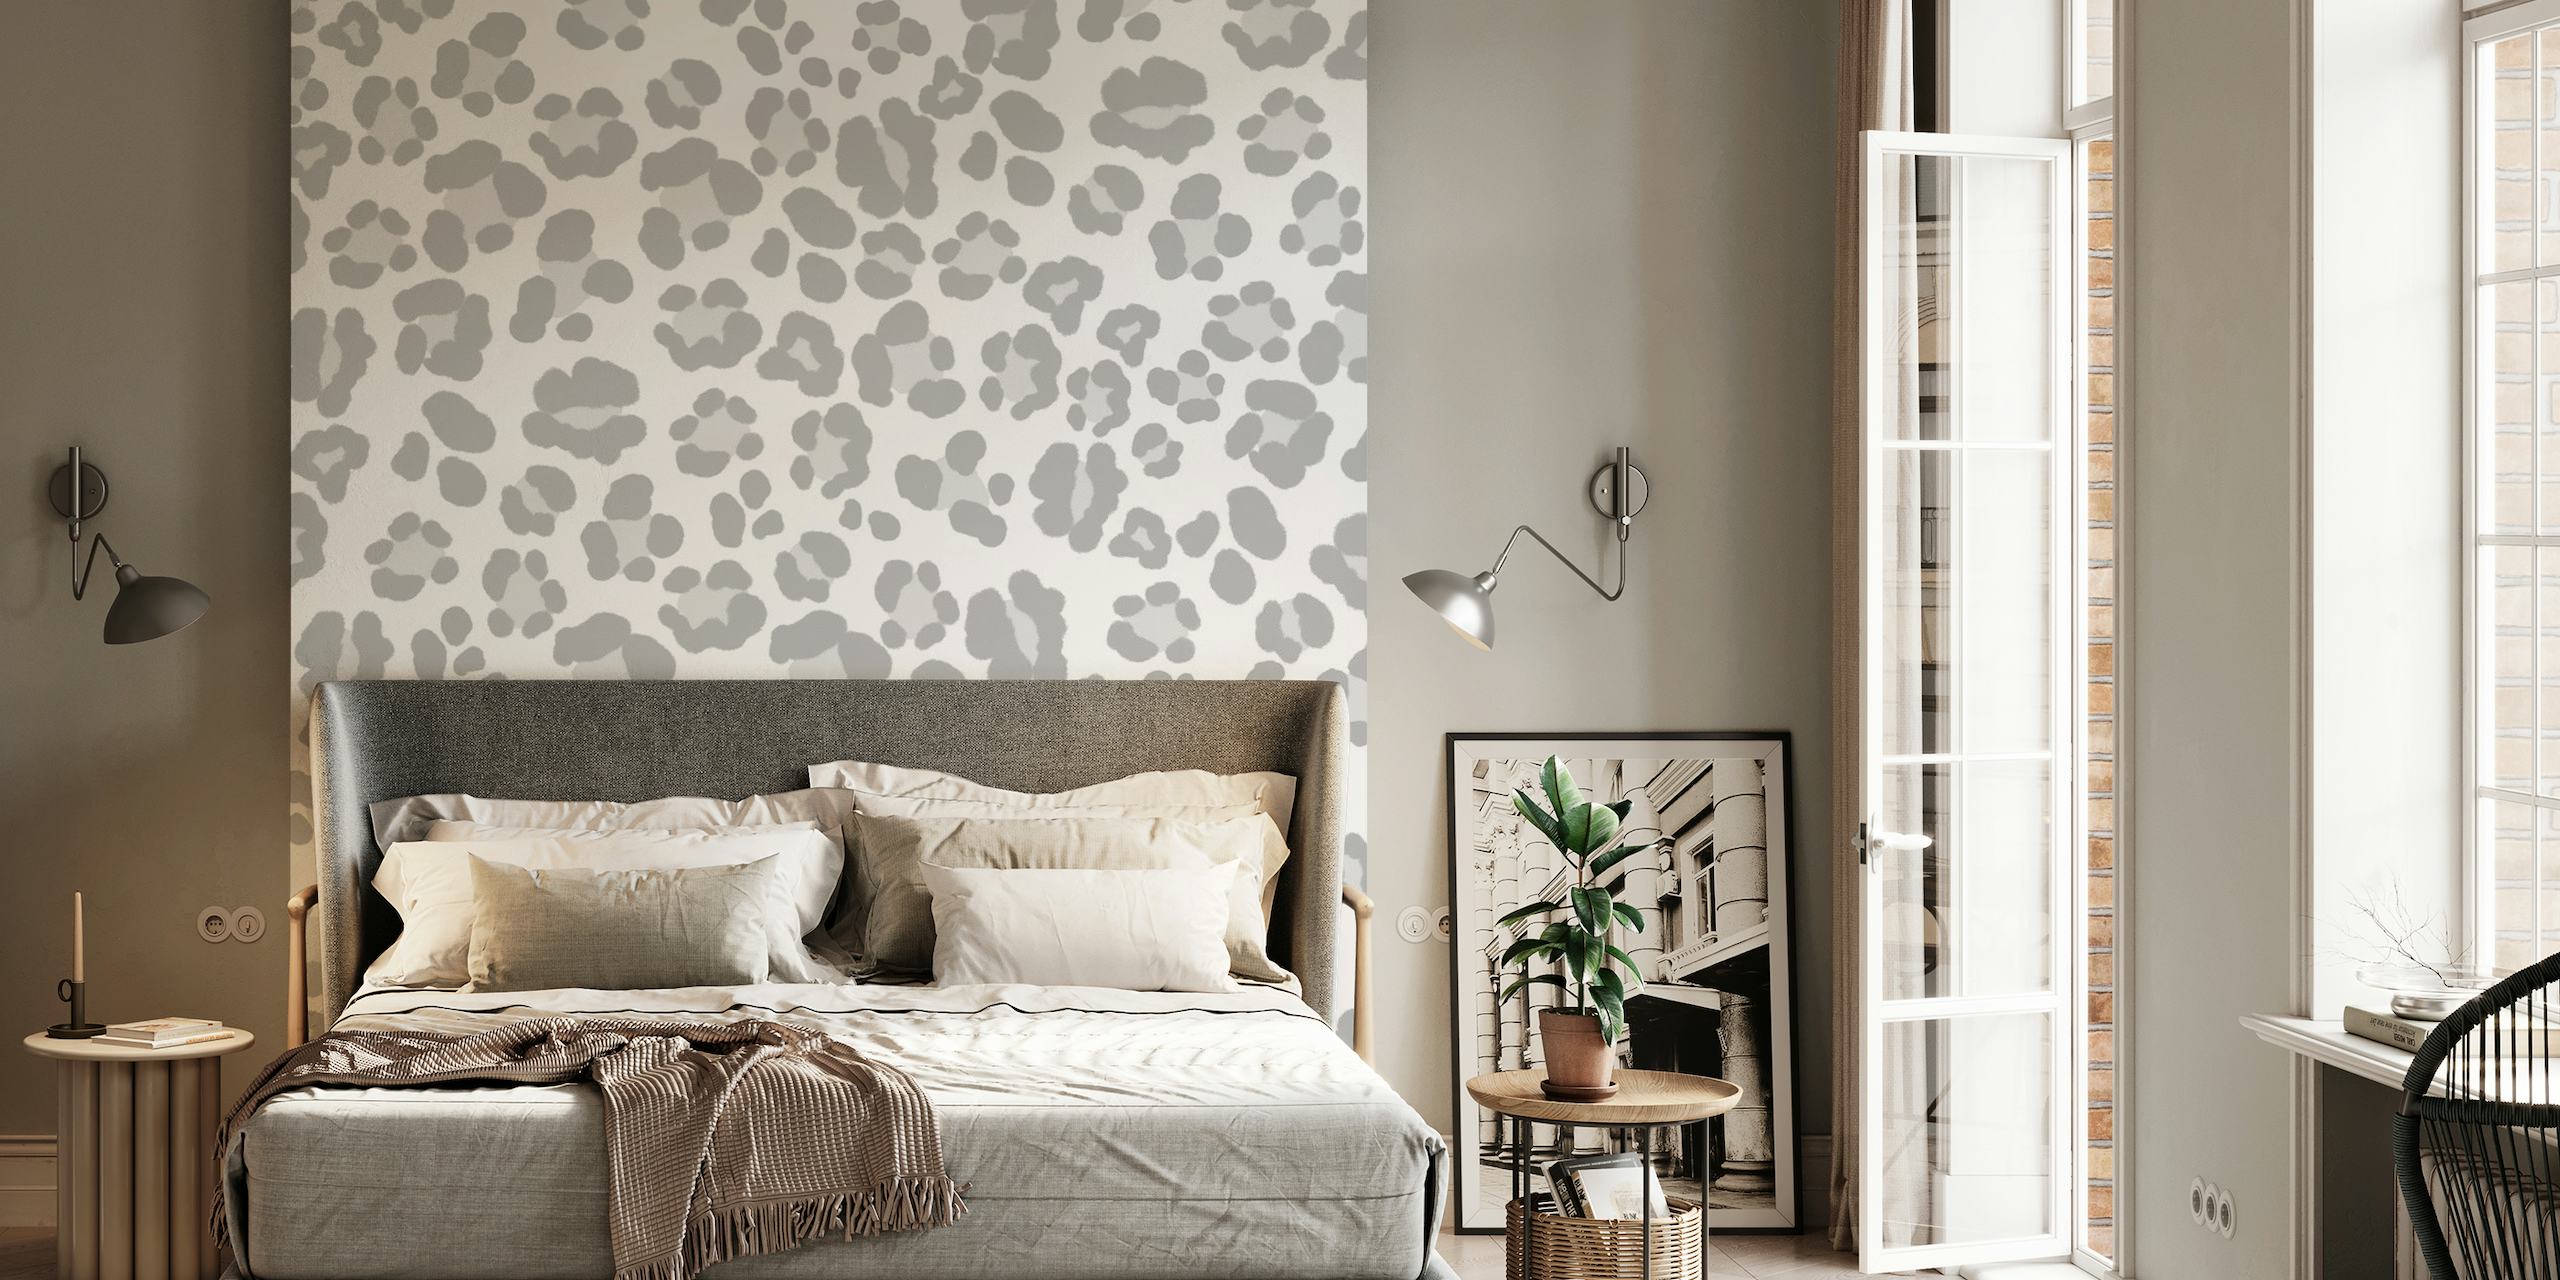 Fototapeta Leopard Print Glam 5 s jemným šedým leopardím vzorem pro elegantní interiér